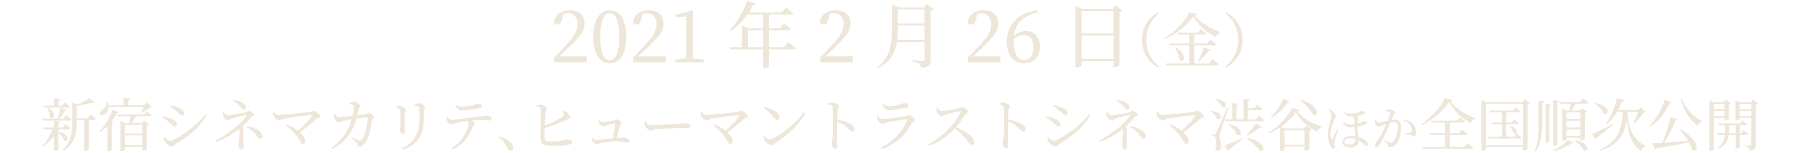 2021/2/26(金)より、新宿シネマカリテ、ヒューマントラストシネマ渋谷ほかにて全国ロードショー